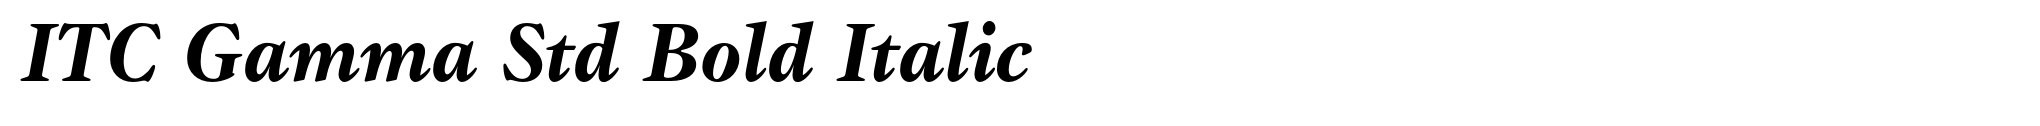 ITC Gamma Std Bold Italic image